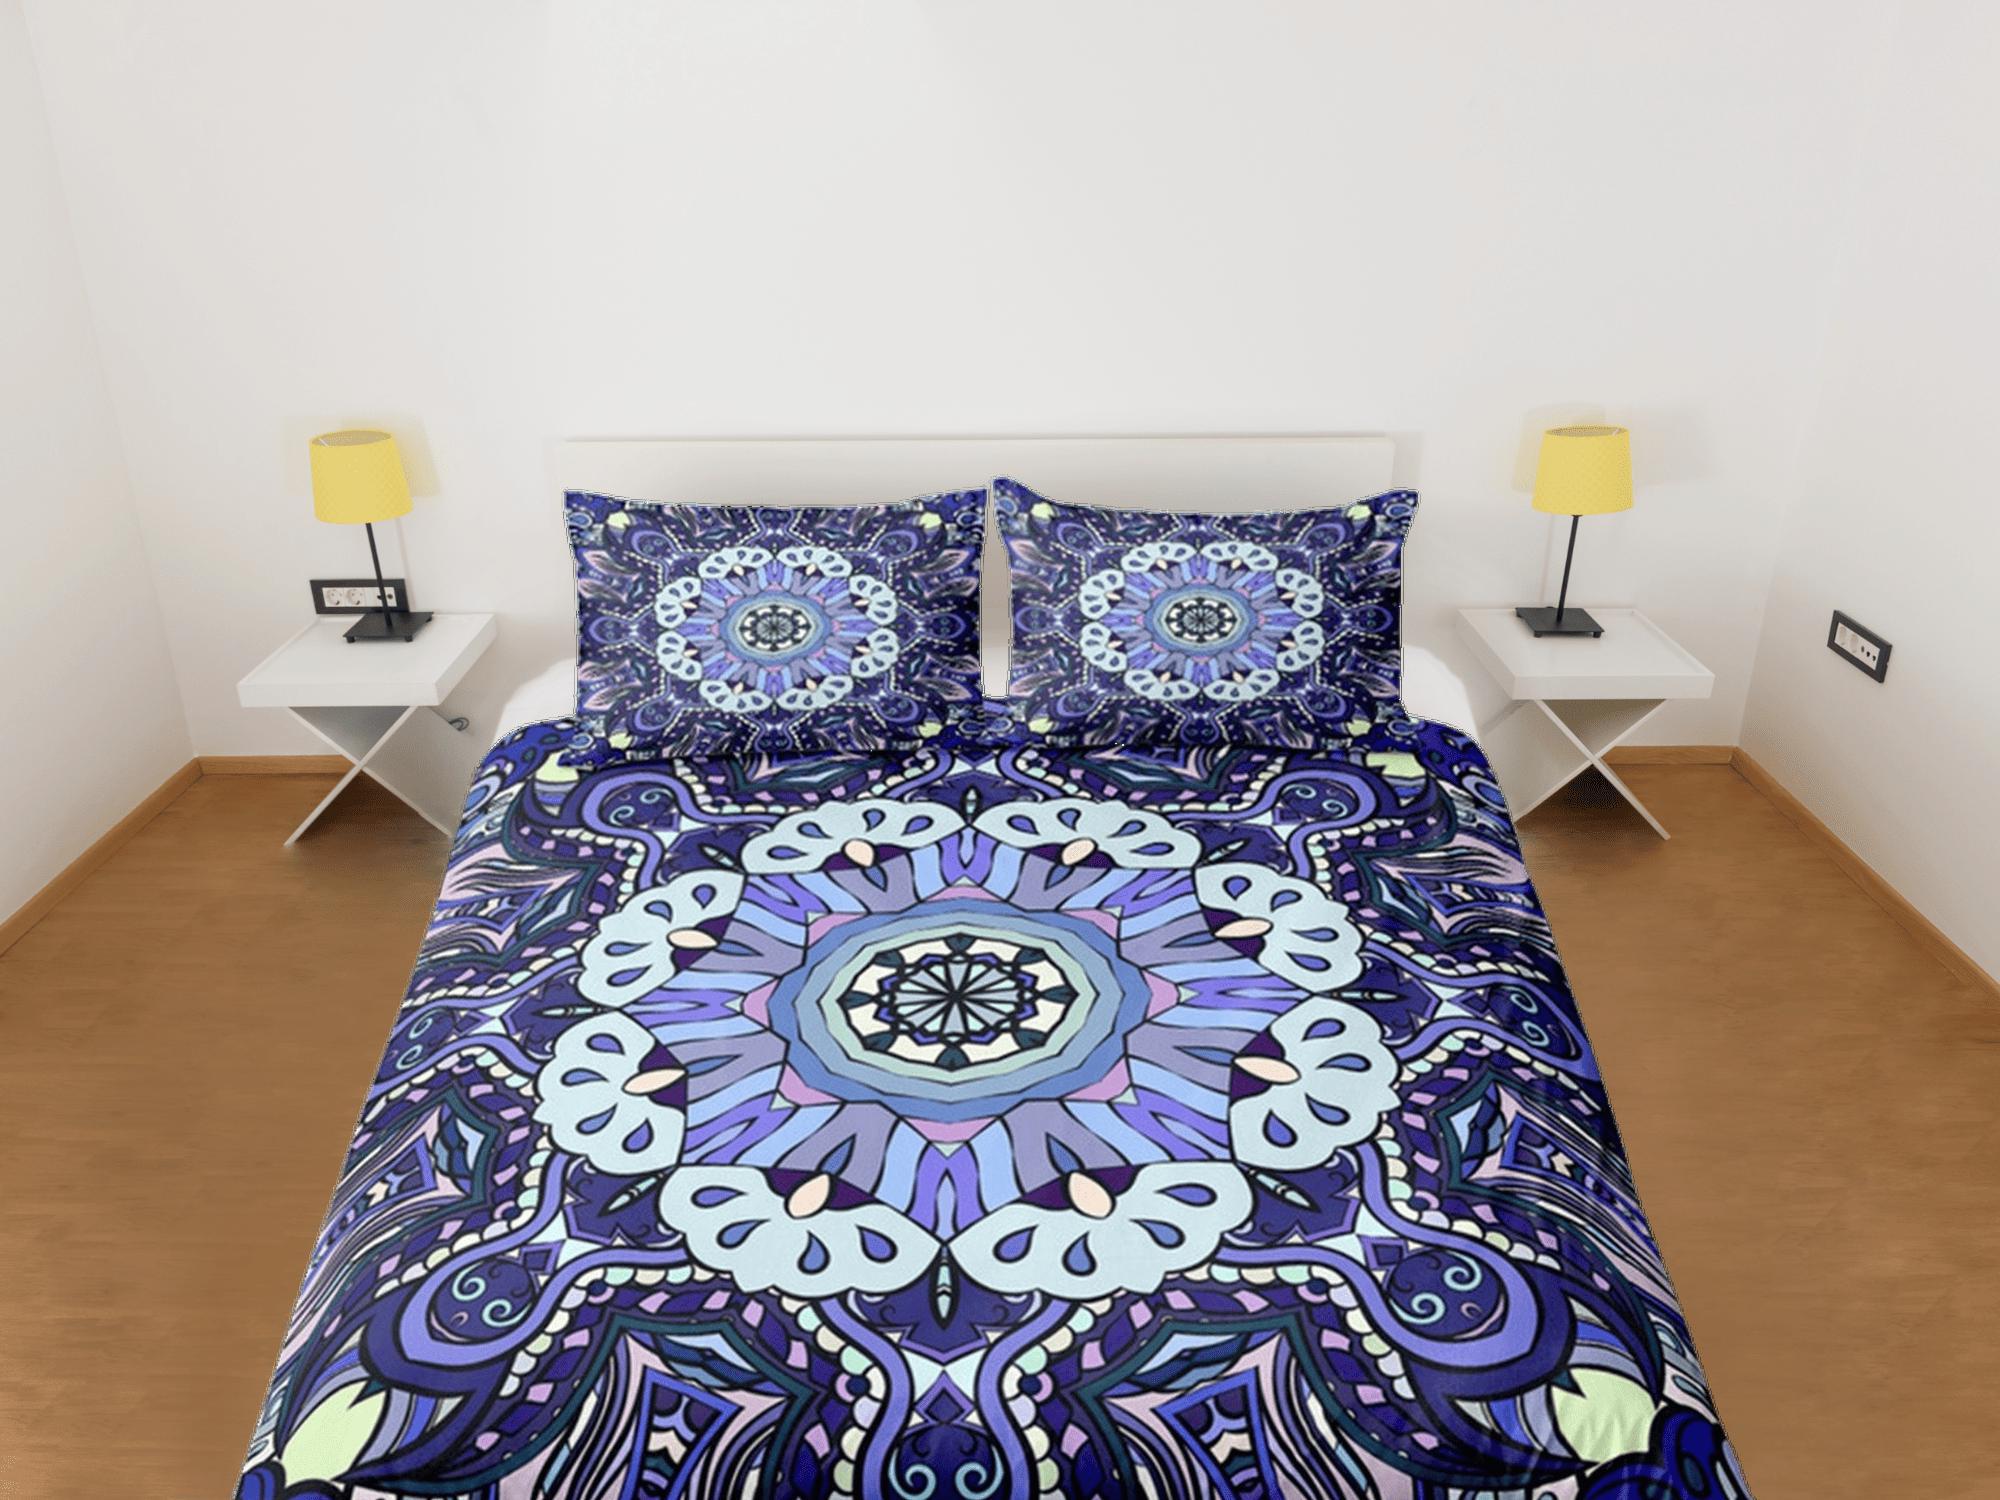 daintyduvet Mandala Duvet Cover Set Boho Bedding, Hippie Dorm Bedding & Pillowcase, Single Bed